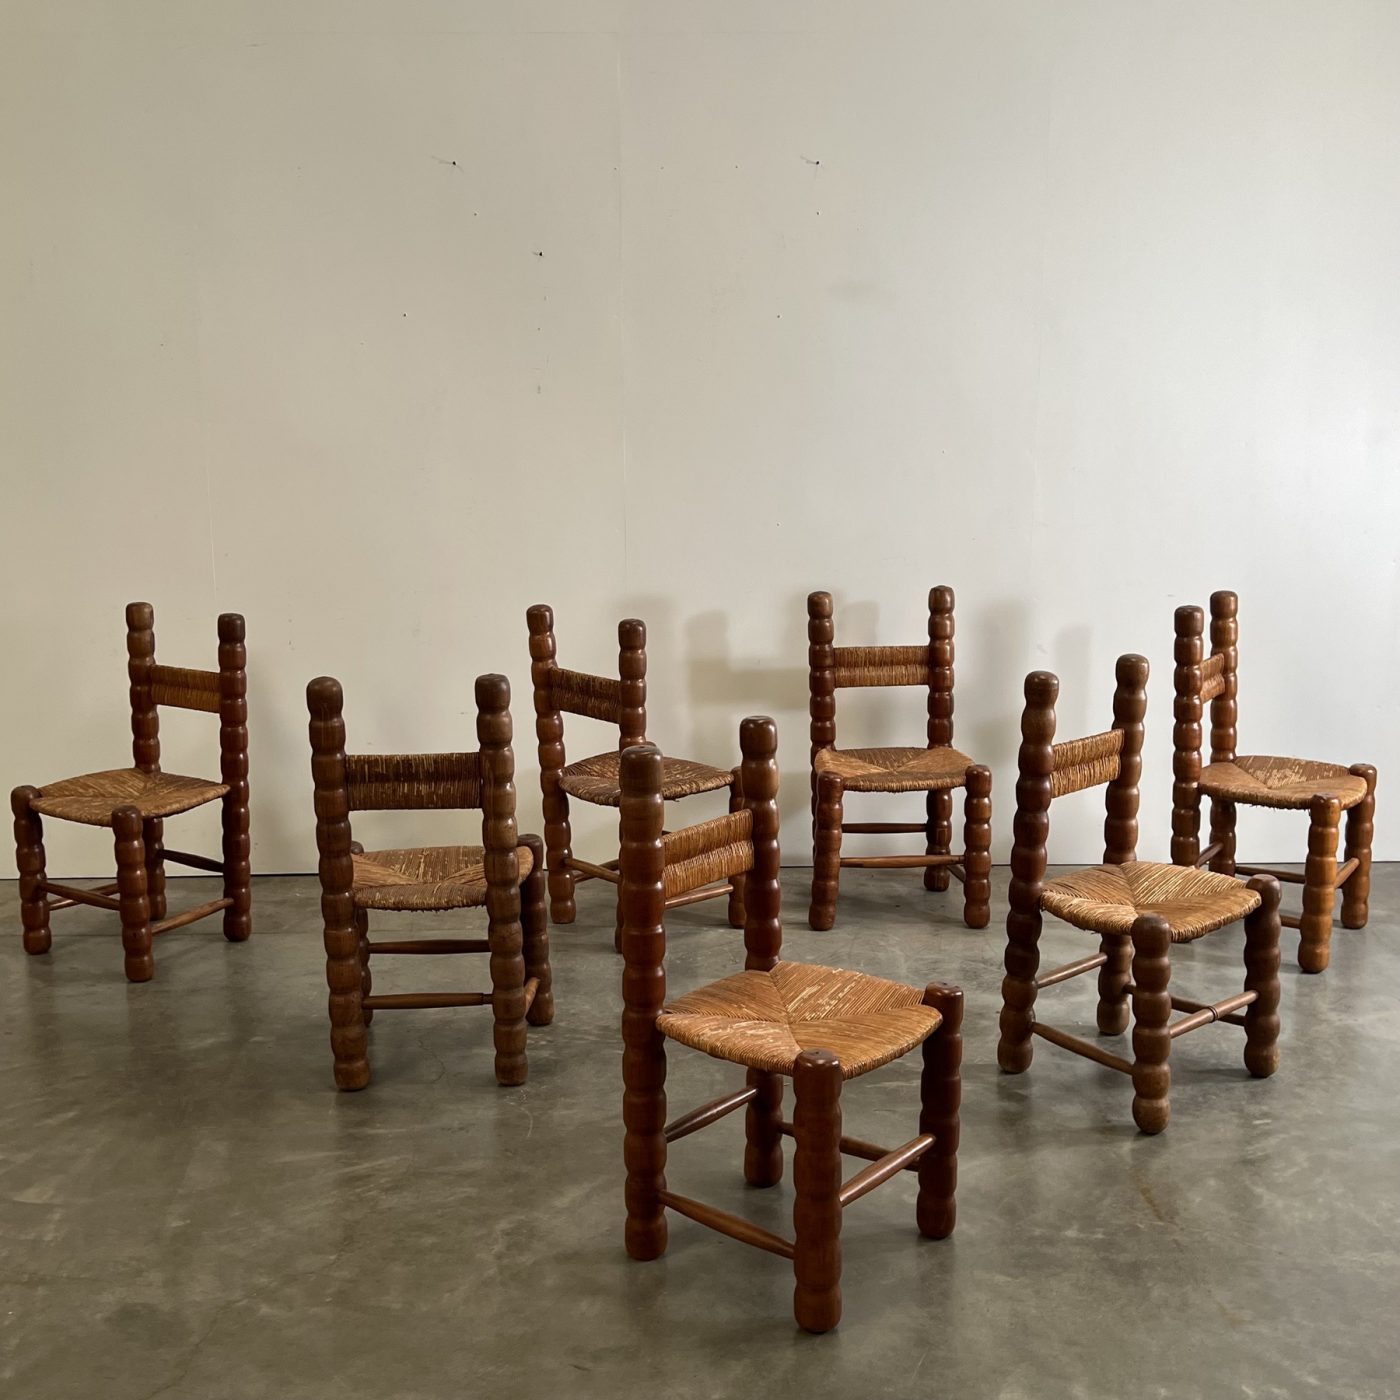 objet-vagabond-massive-chairs0014